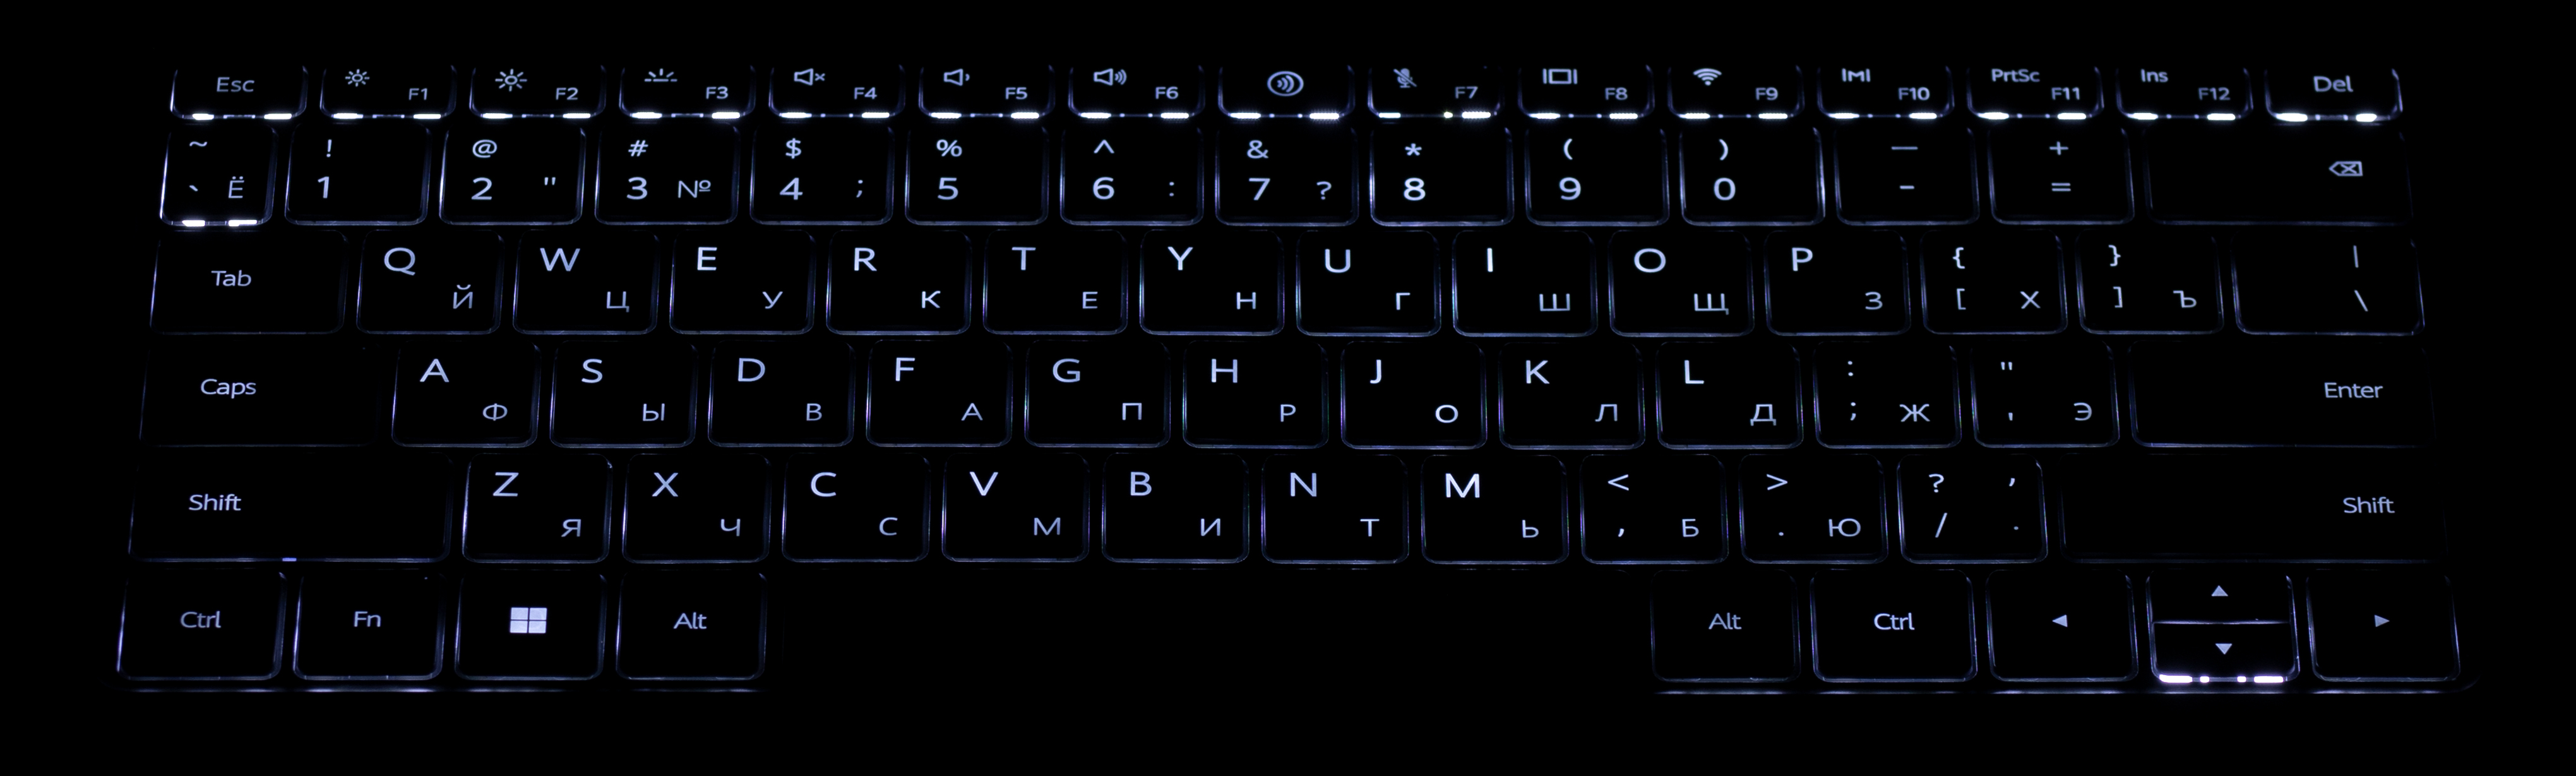 Как включить подсветку клавиатуры на ноутбуке хуавей